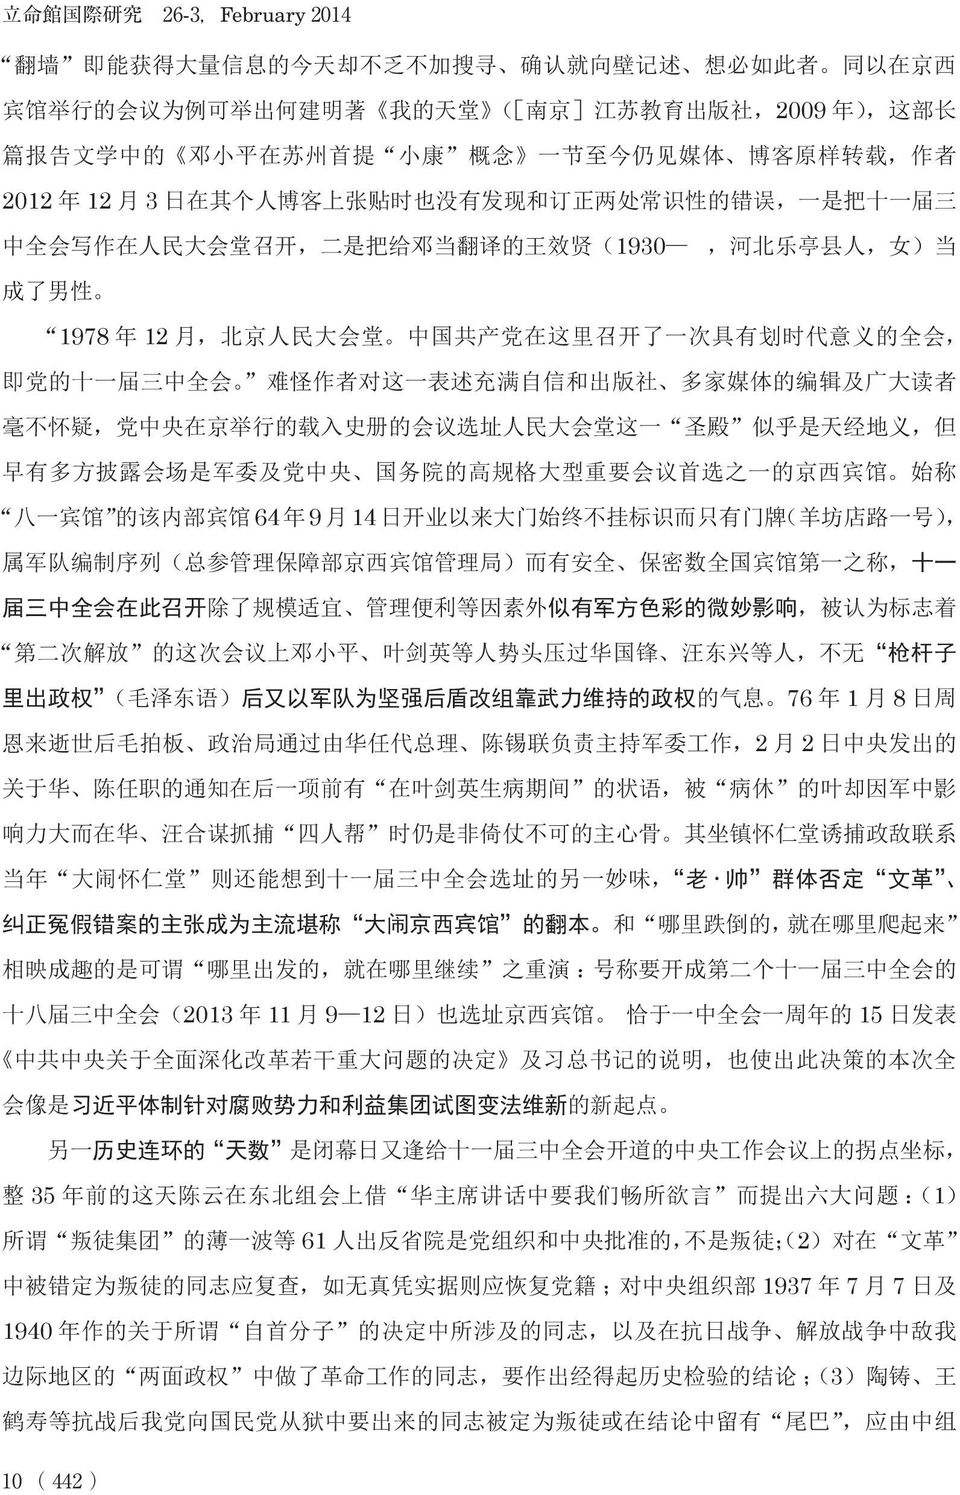 男 性 1978 年 12 月, 北 京 人 民 大 会 堂 中 国 共 产 党 在 这 里 召 开 了 一 次 具 有 划 时 代 意 义 的 全 会, 即 党 的 十 一 届 三 中 全 会 难 怪 作 者 对 这 一 表 述 充 满 自 信 和 出 版 社 多 家 媒 体 的 编 辑 及 广 大 读 者 毫 不 怀 疑, 党 中 央 在 京 举 行 的 载 入 史 册 的 会 议 选 址